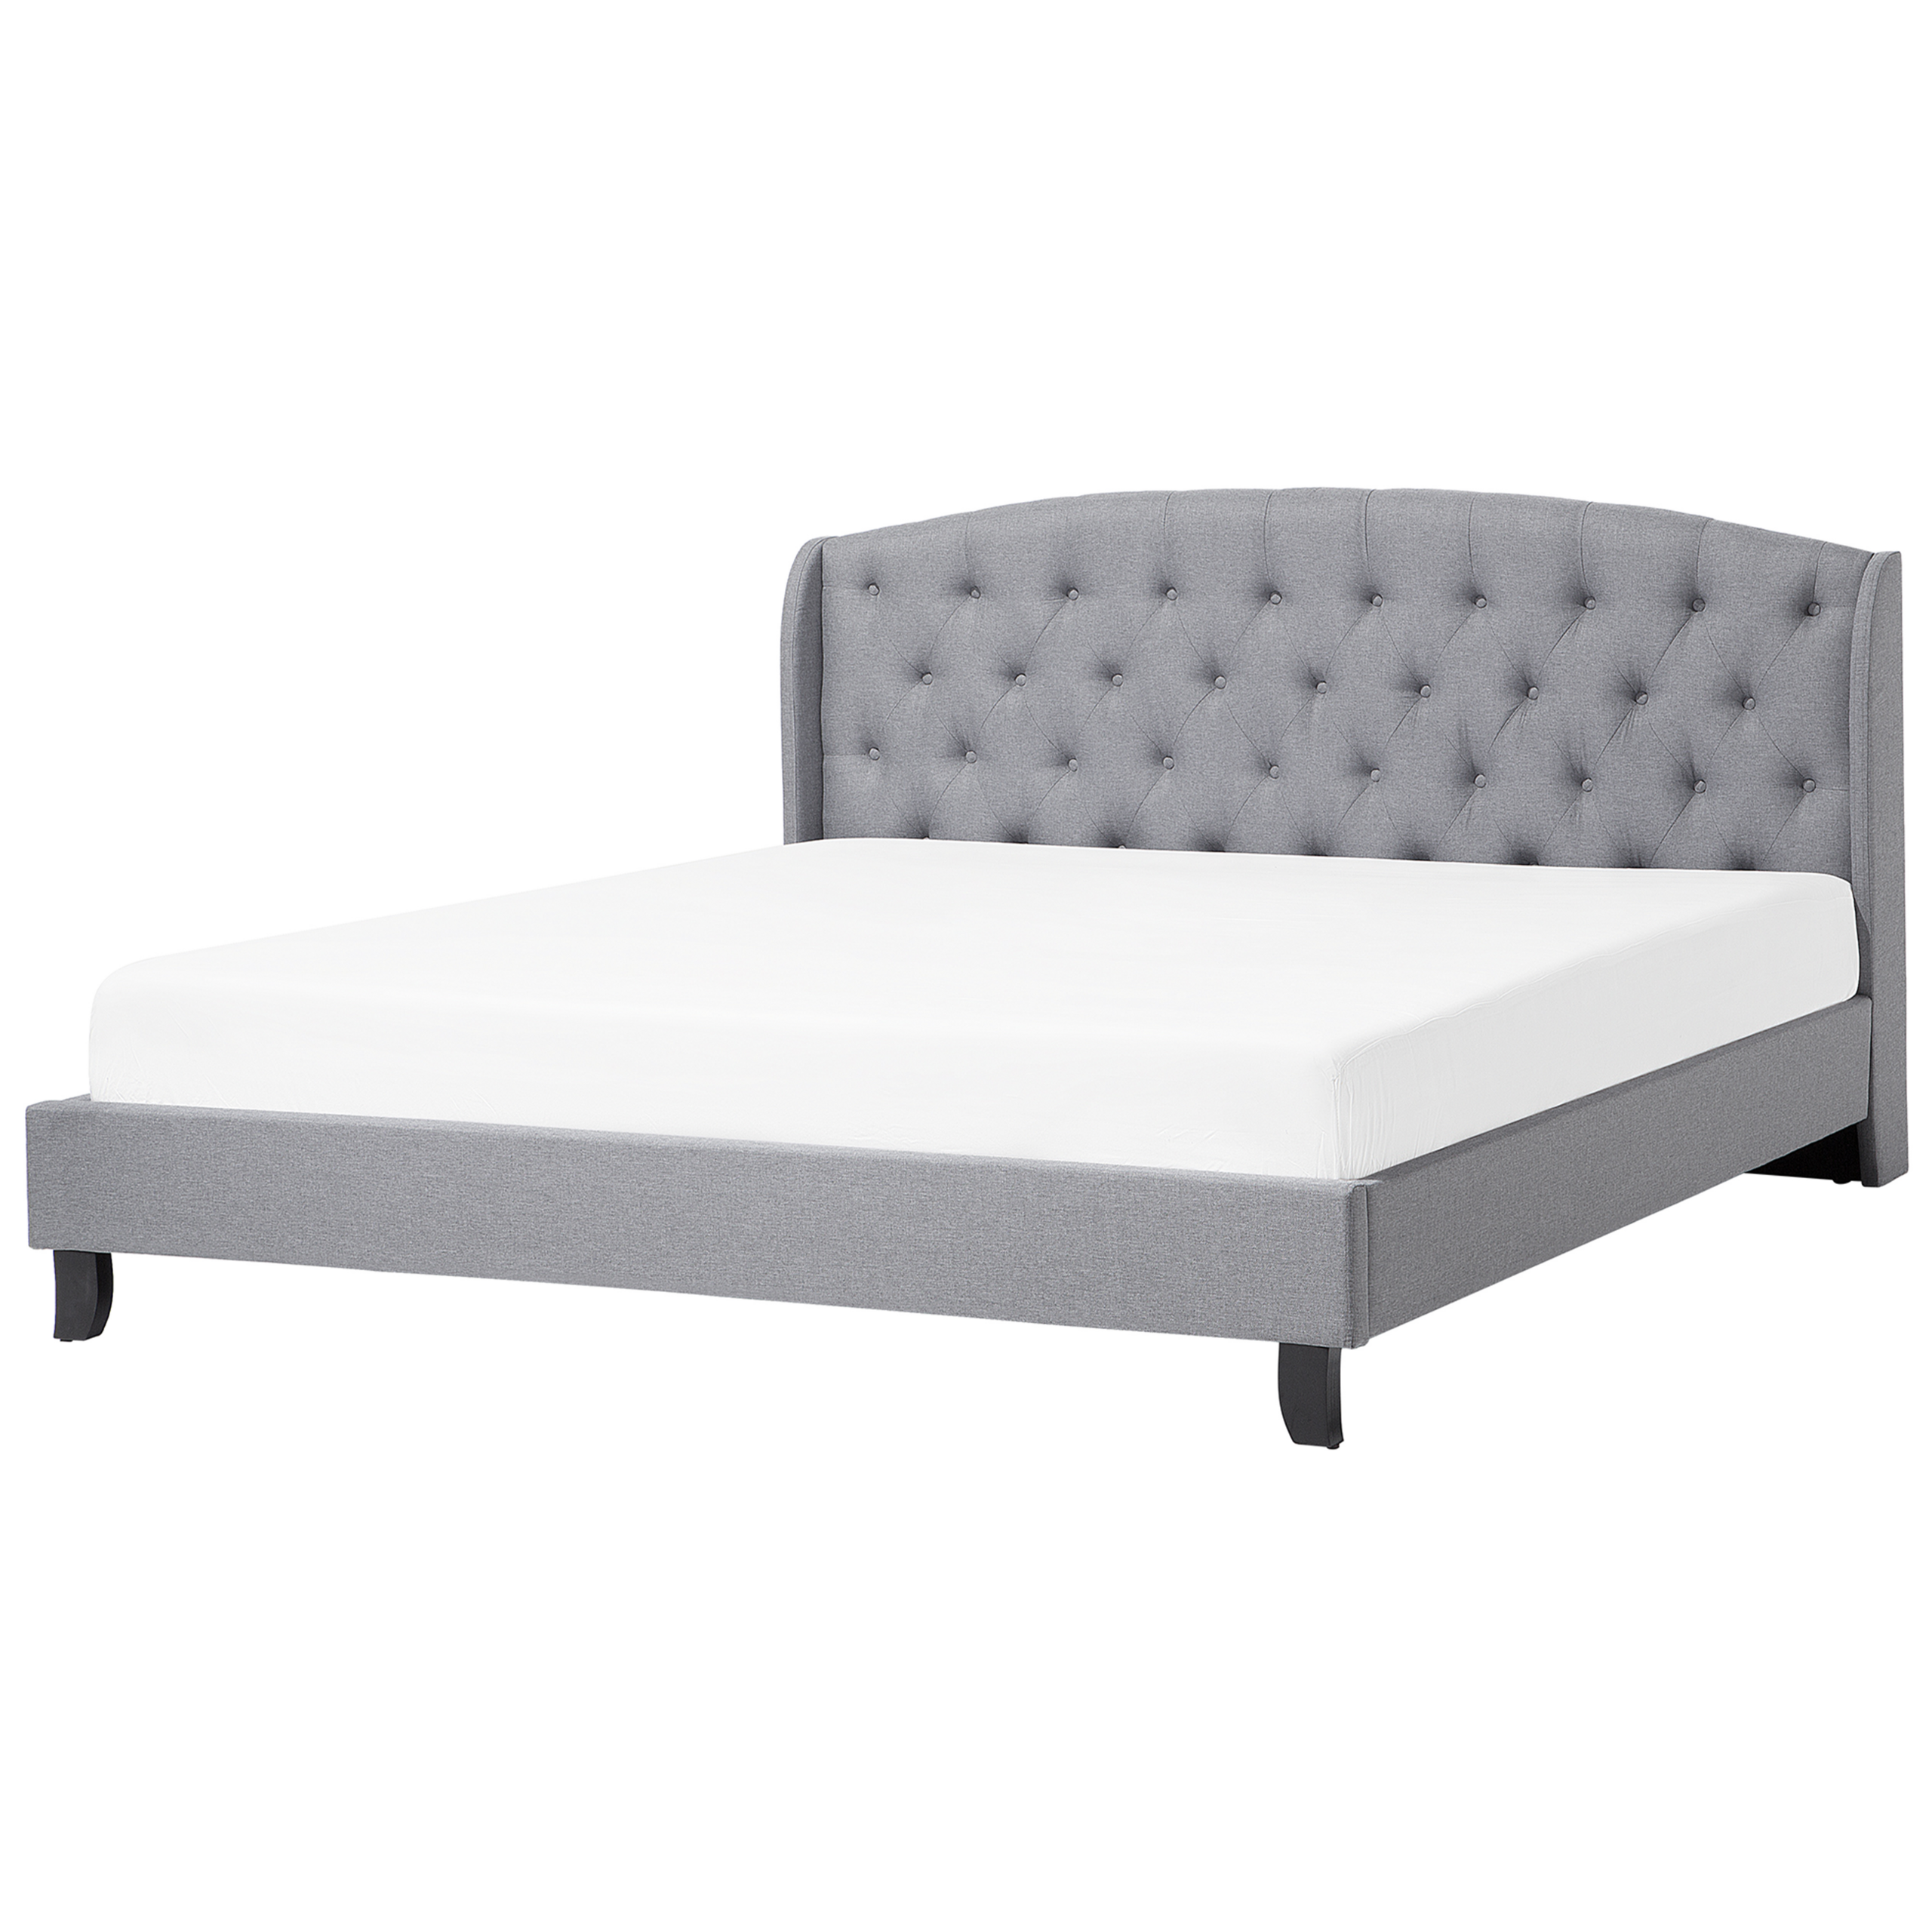 Beliani Slatted Bed Frame Grey Polyester Fabric Upholstered Tufted Headrest 6ft EU Super King Size Modern Design